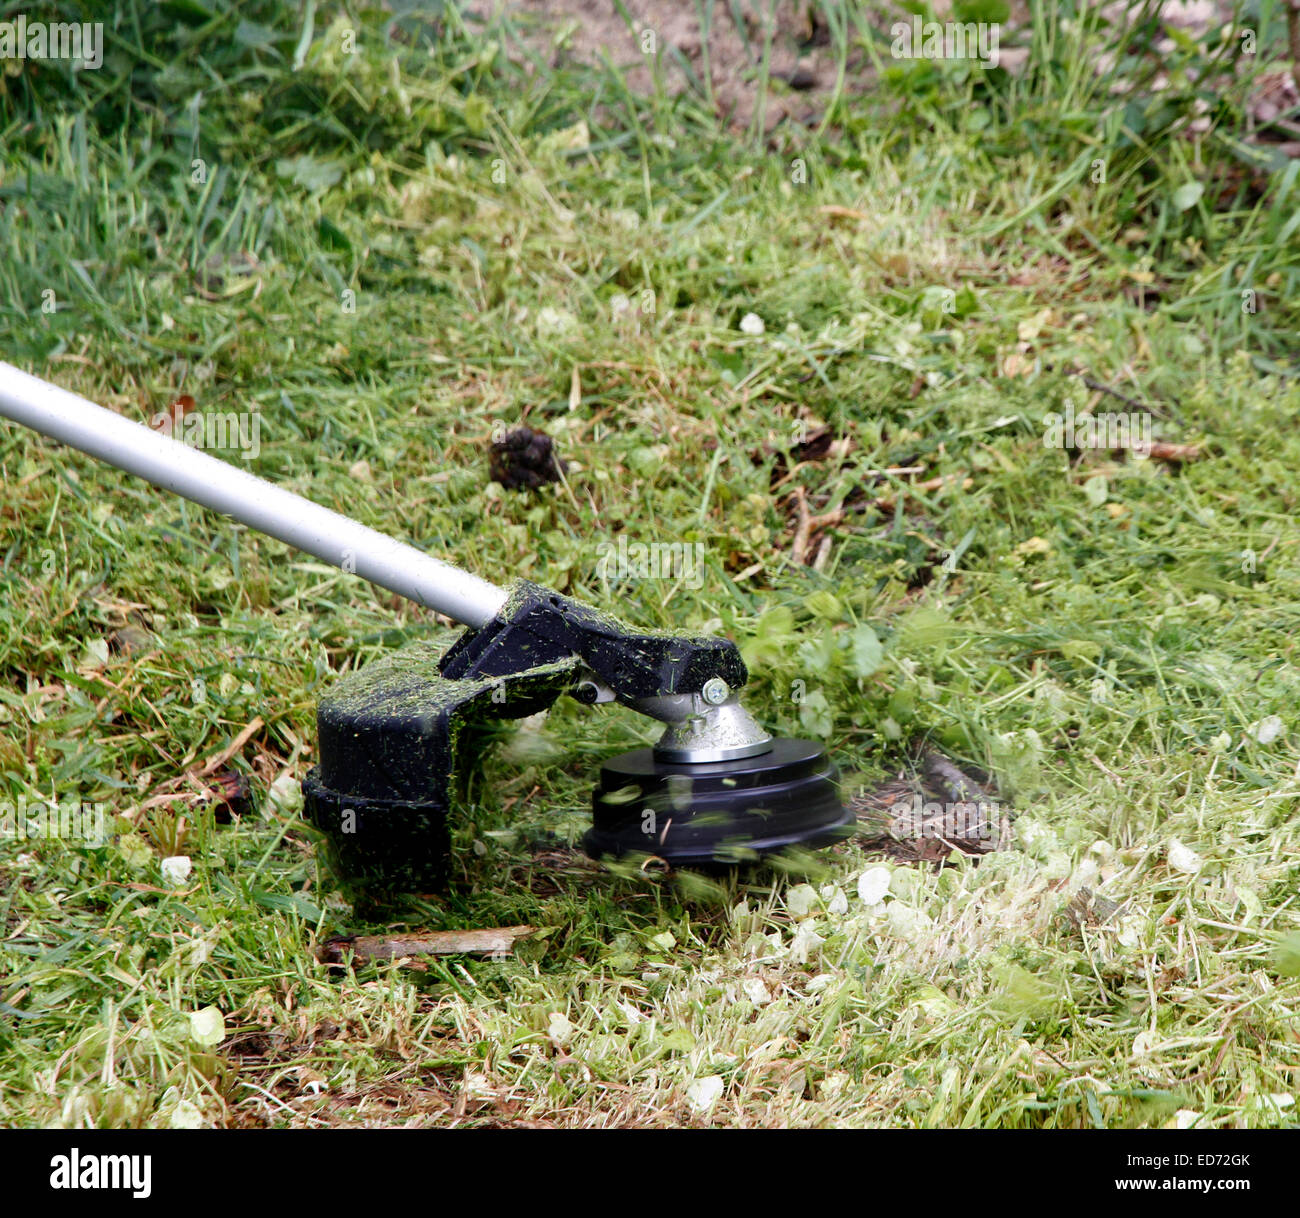 Mäht lange grobe Rasen mit einem Benzin-Trimmgerät genannt auch "Weed Eater" oder "Unkraut-Wacker." Stockfoto